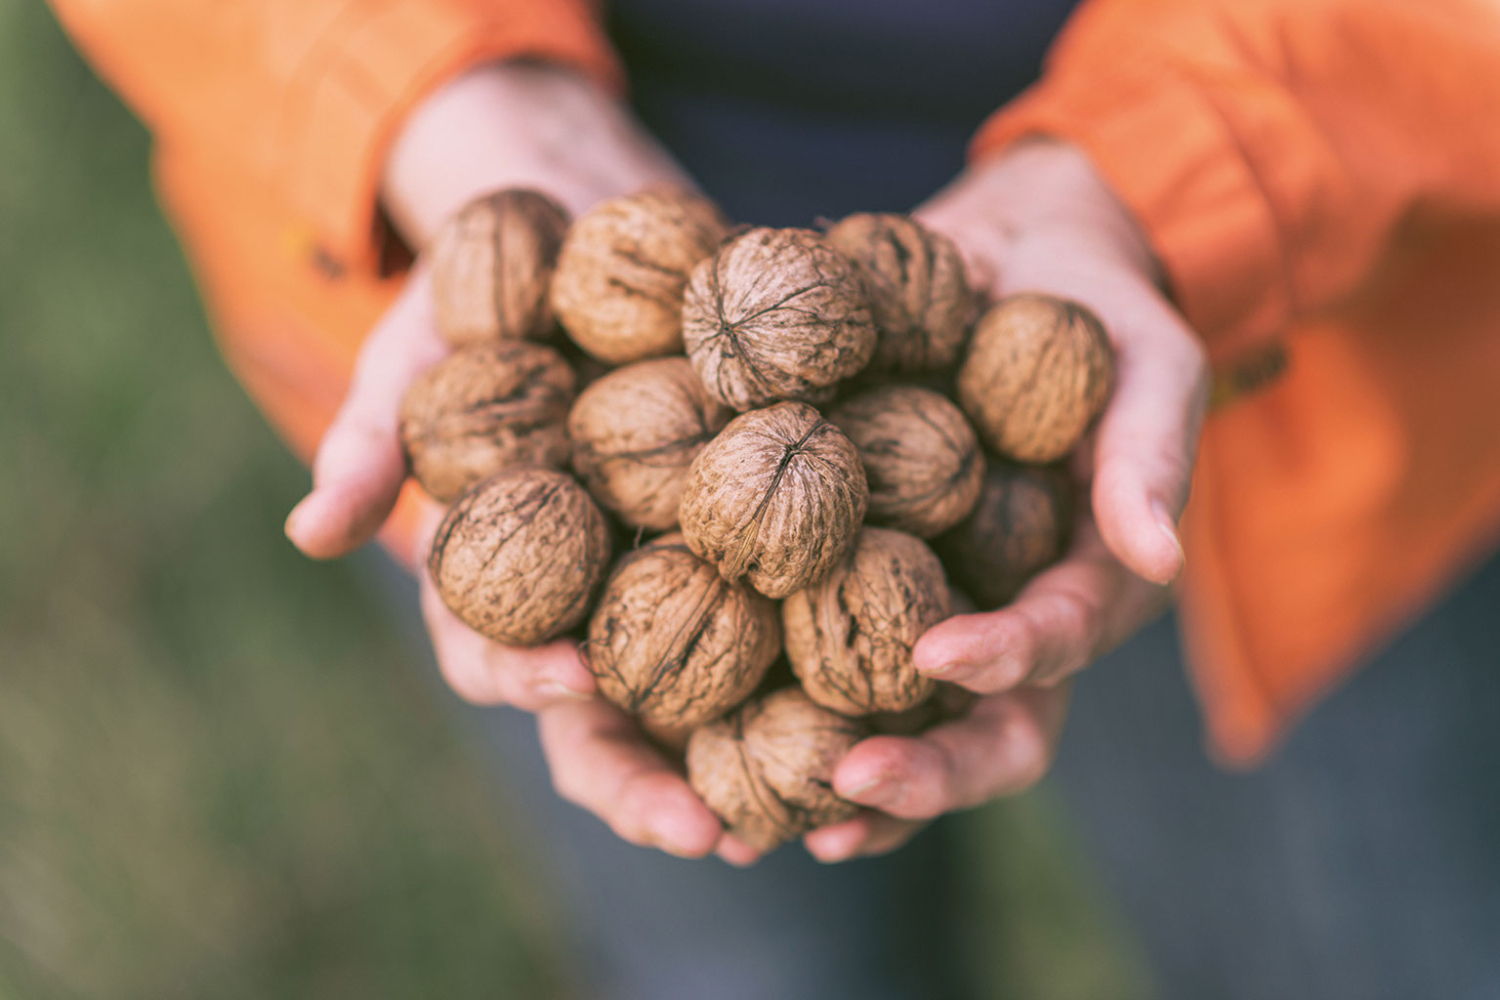 Op zoek naar 5.000 kg walnoten voor sociale ateliers